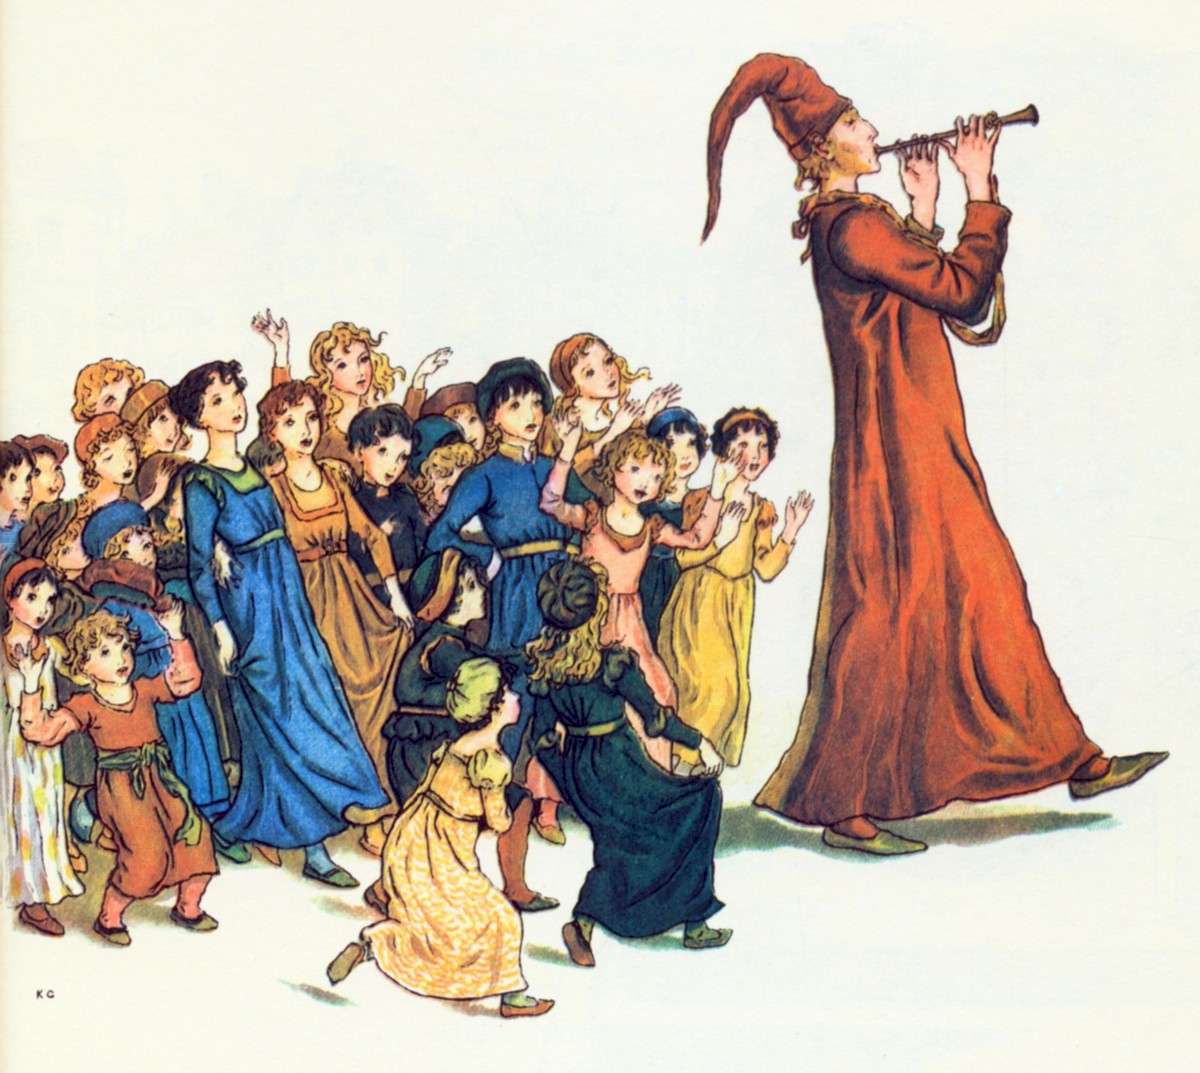 La perturbadora historia real del Flautista de Hamelin